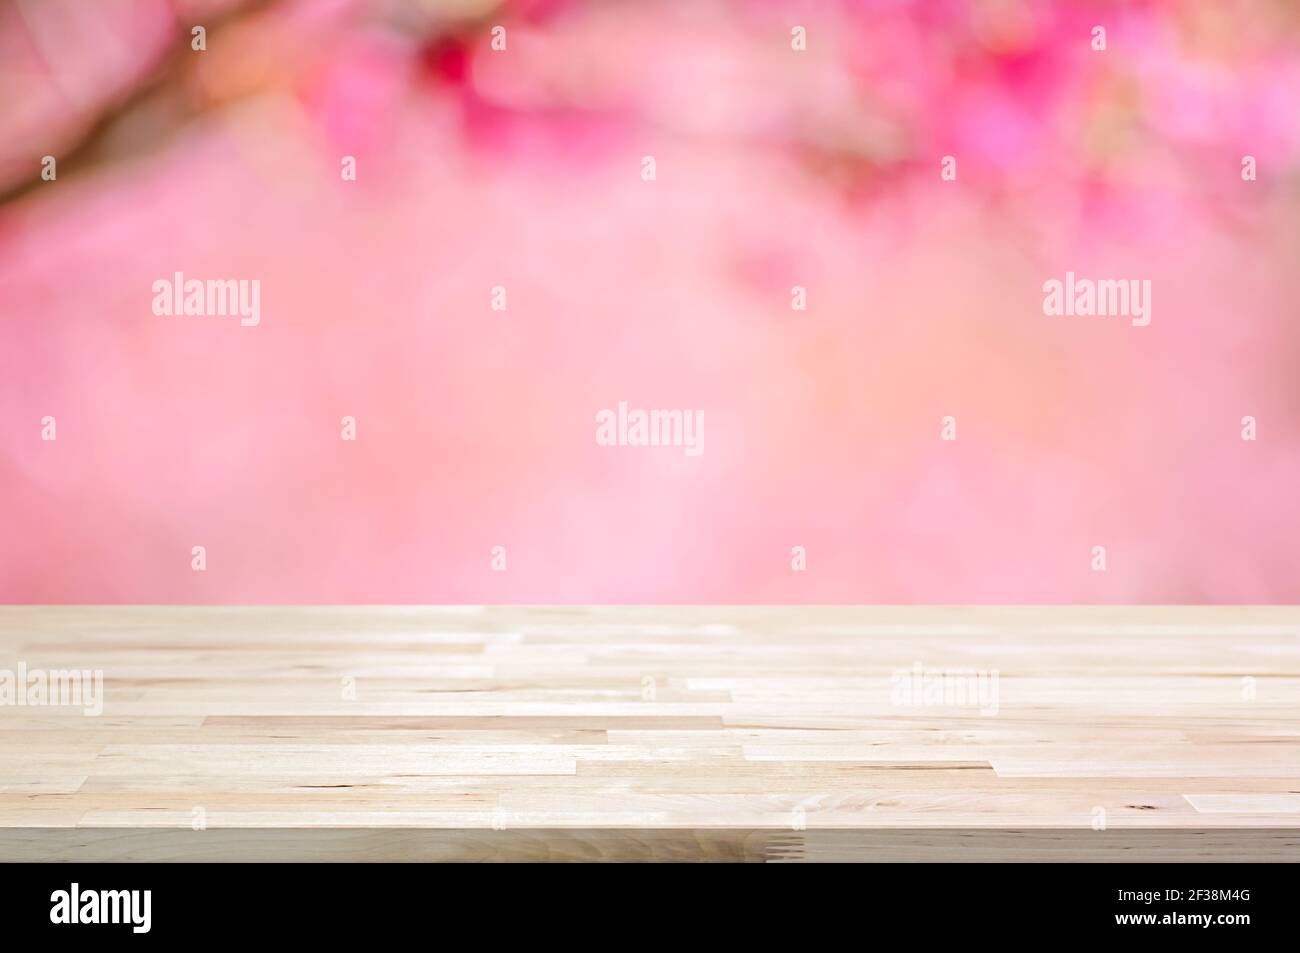 Holztischplatte auf verschwommenem Hintergrund von rosa Kirschblüte Blumen - kann für die Anzeige oder Montage Ihrer Produkte verwendet Stockfoto